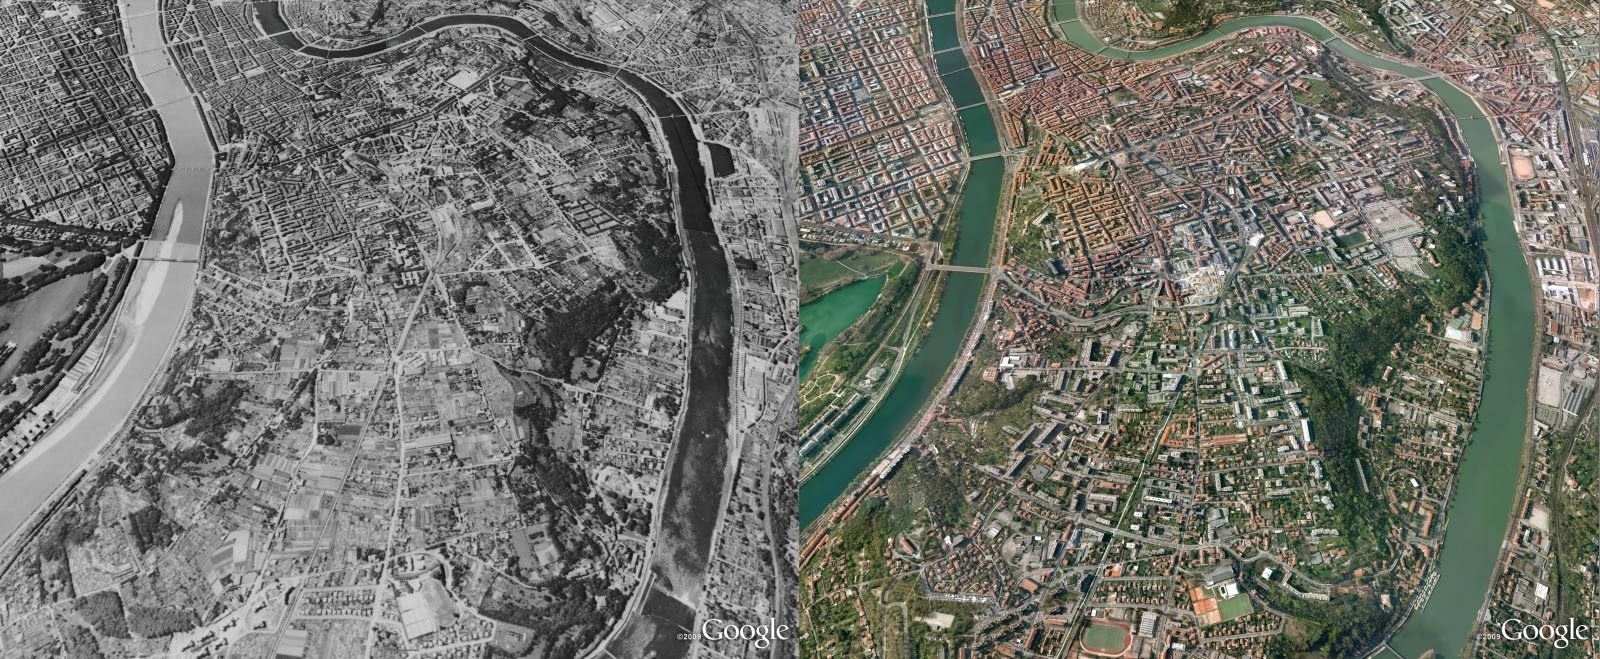 Google-Earth-Lyon